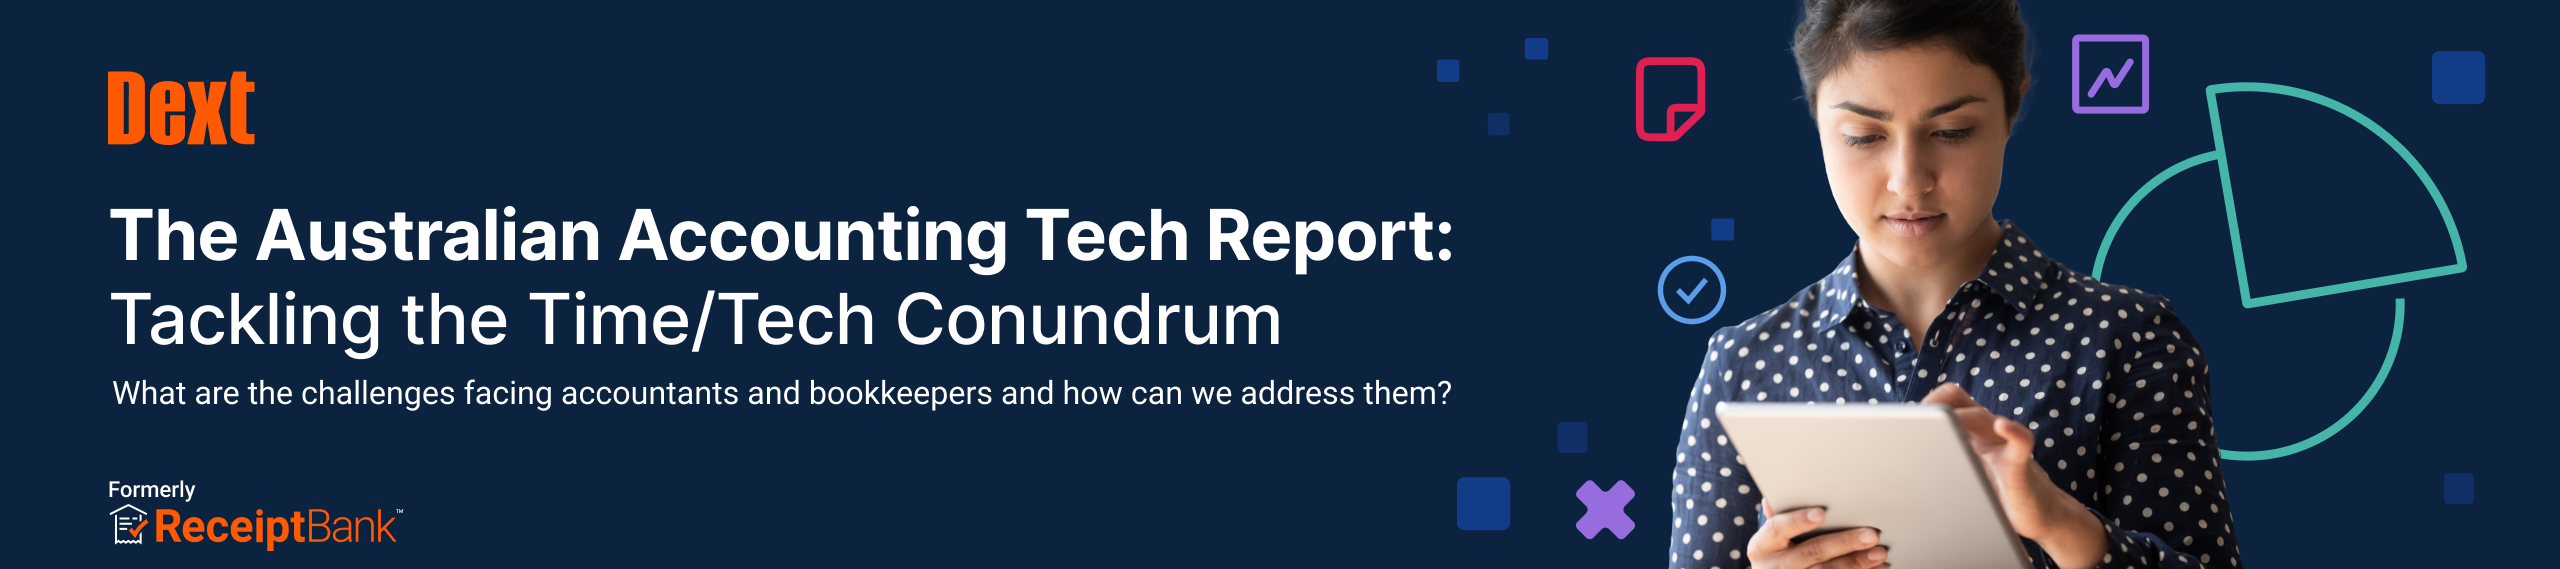 The-Australian-Accounting-Tech-Report-Hubspot-LP